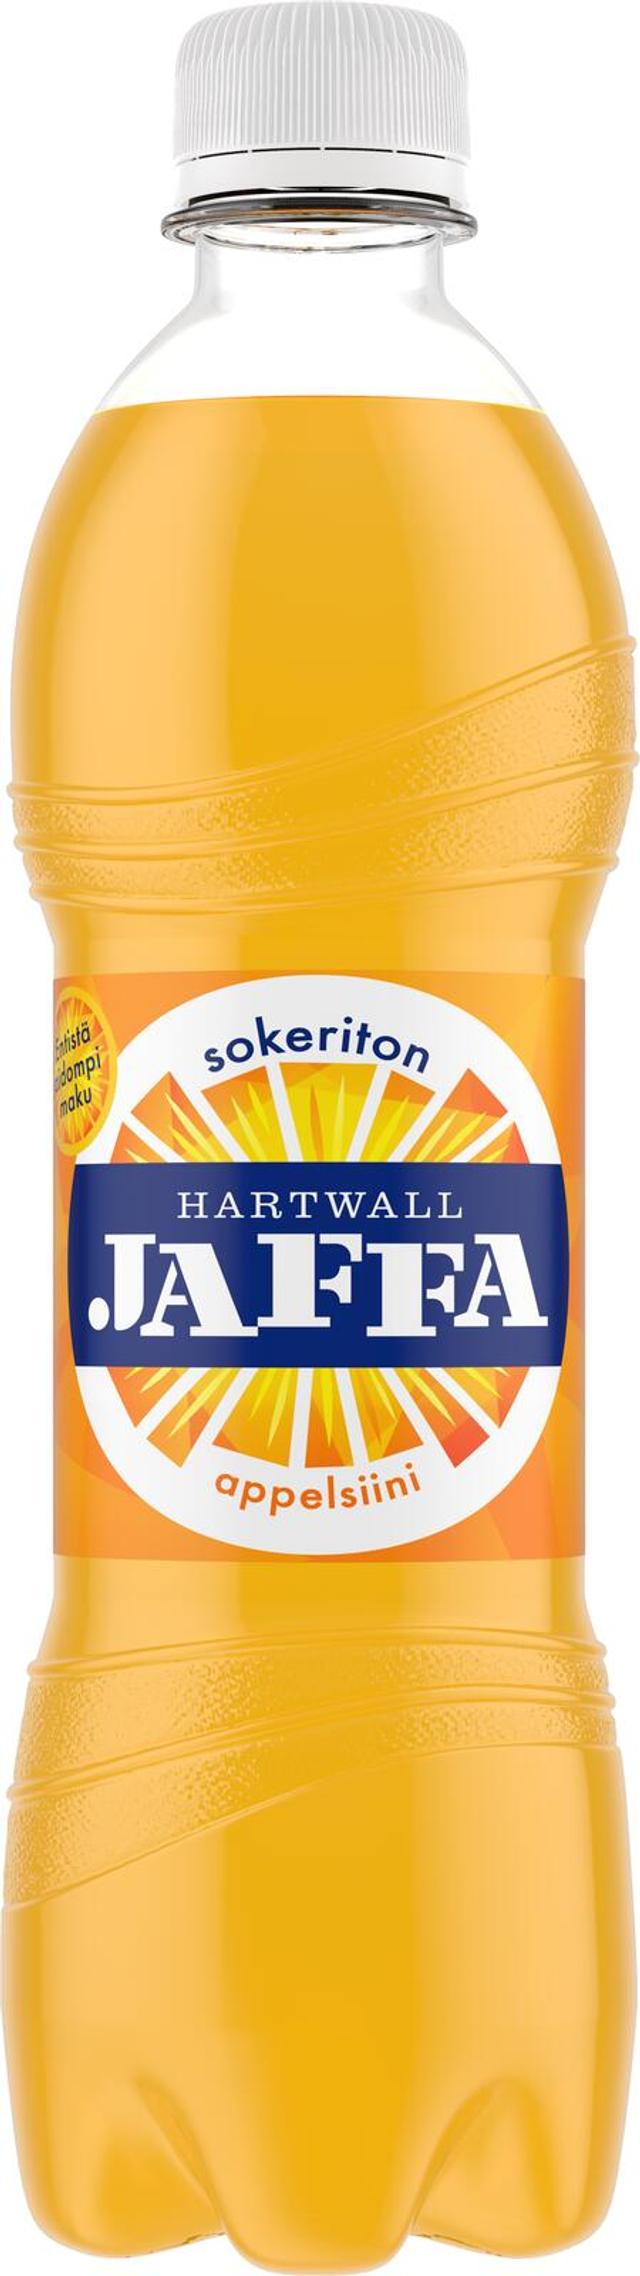 Hartwall Jaffa Appelsiini Sokeriton virvoitusjuoma 0,5 l